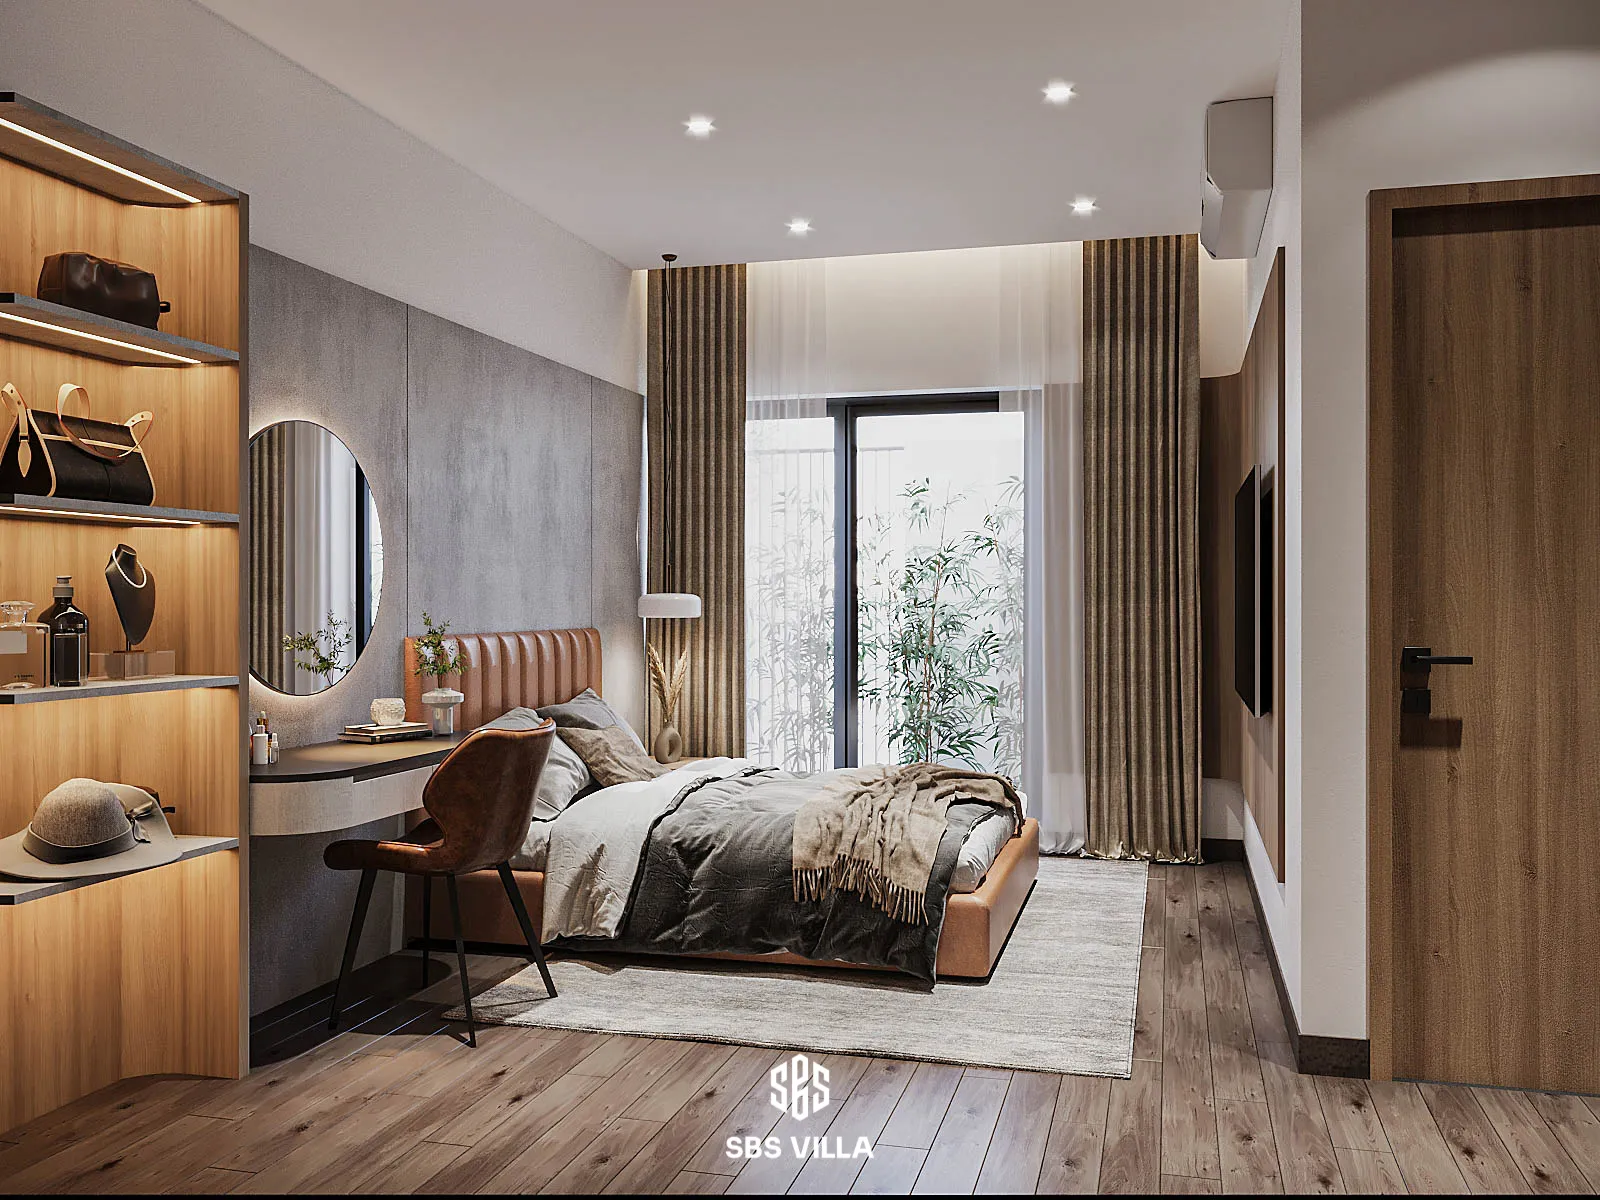 Nội thất phòng ngủ sang trọng, sử dụng chất liệu gỗ làm điểm nhấn chủ đạo 